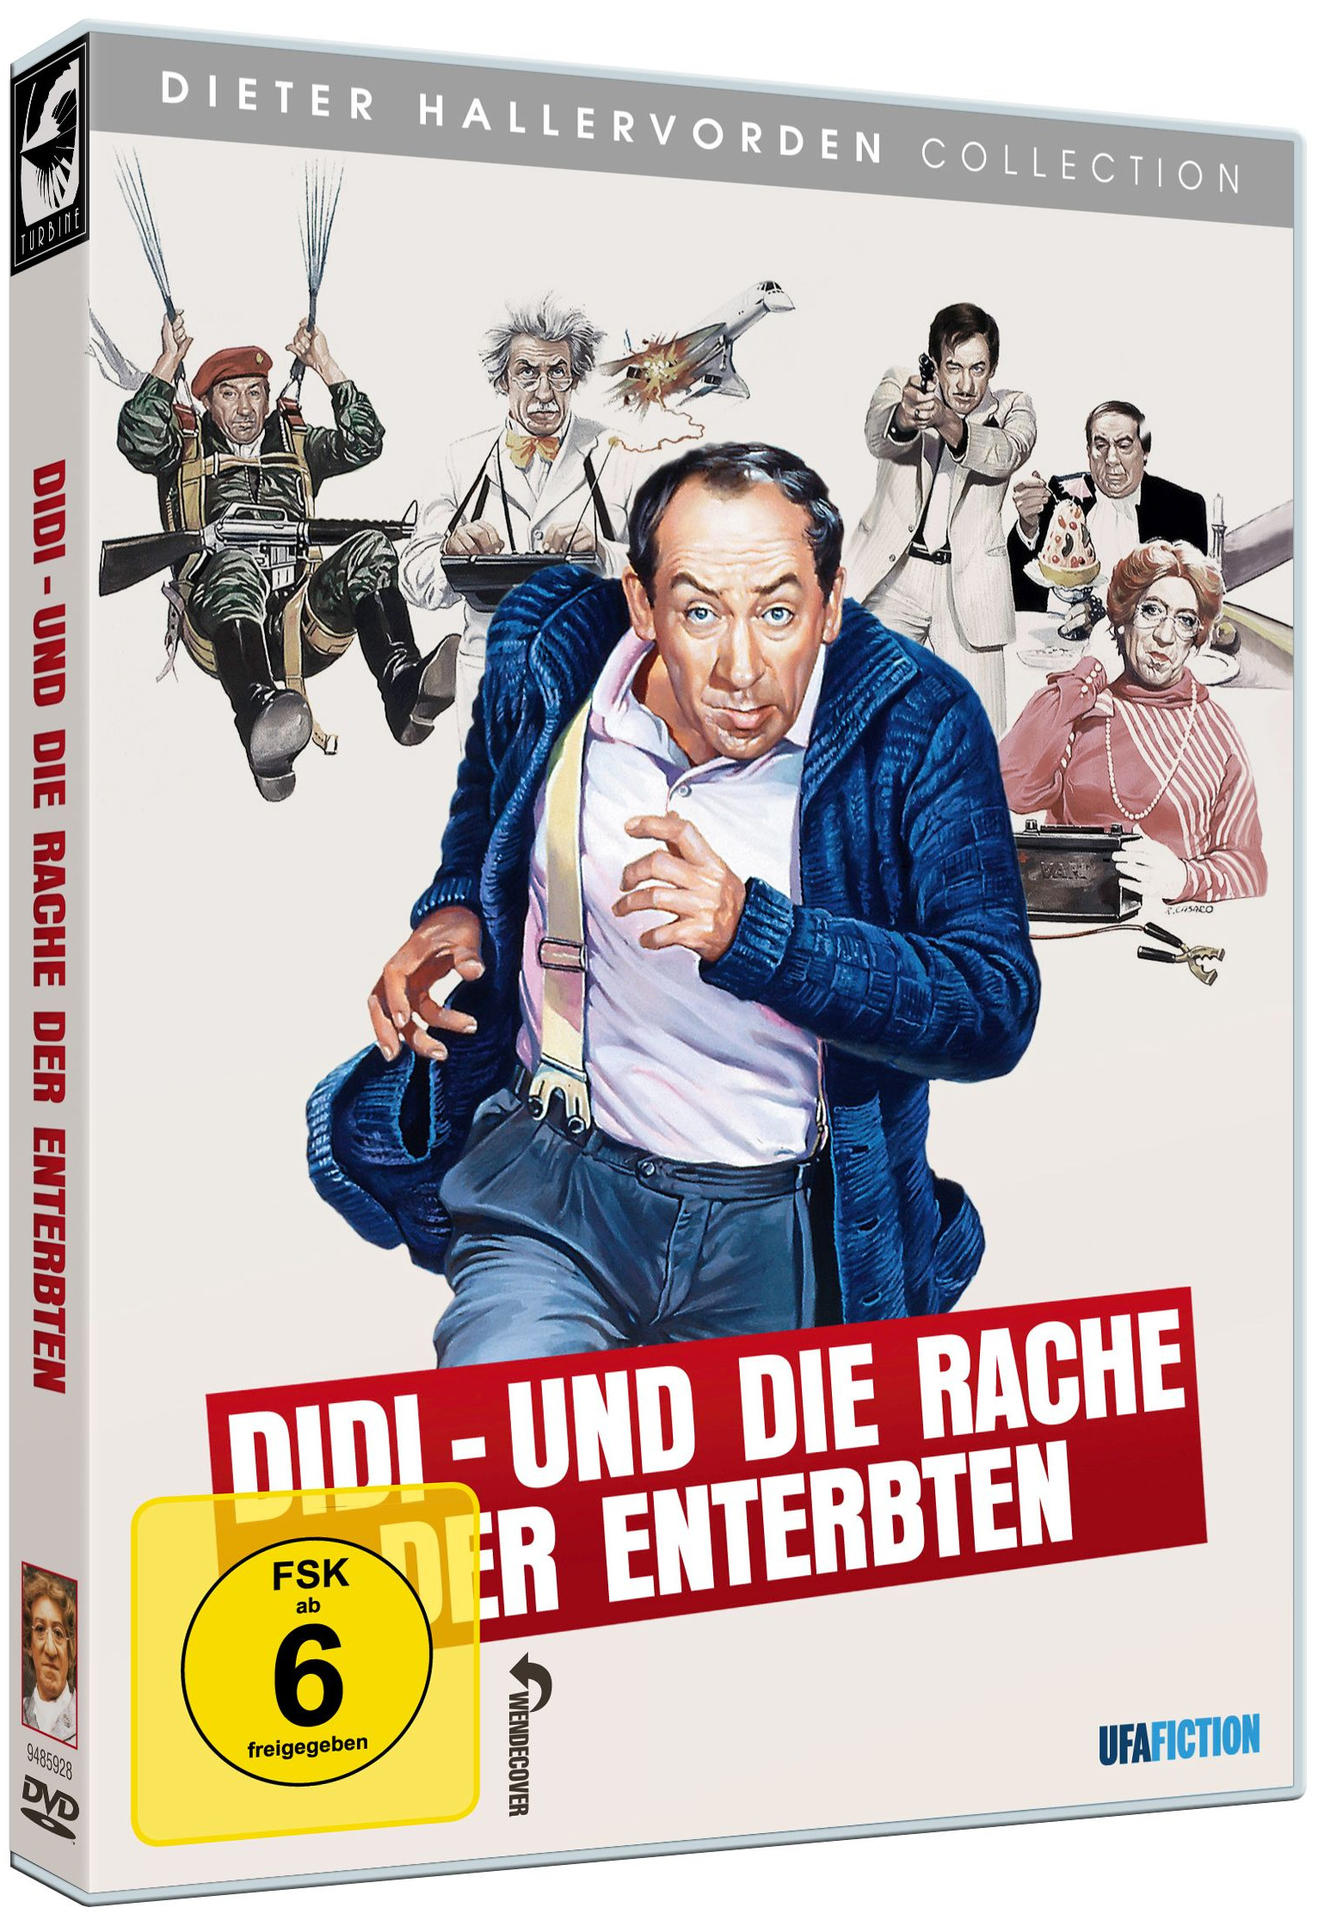 DVD Rache Und Enterbten der die Didi -